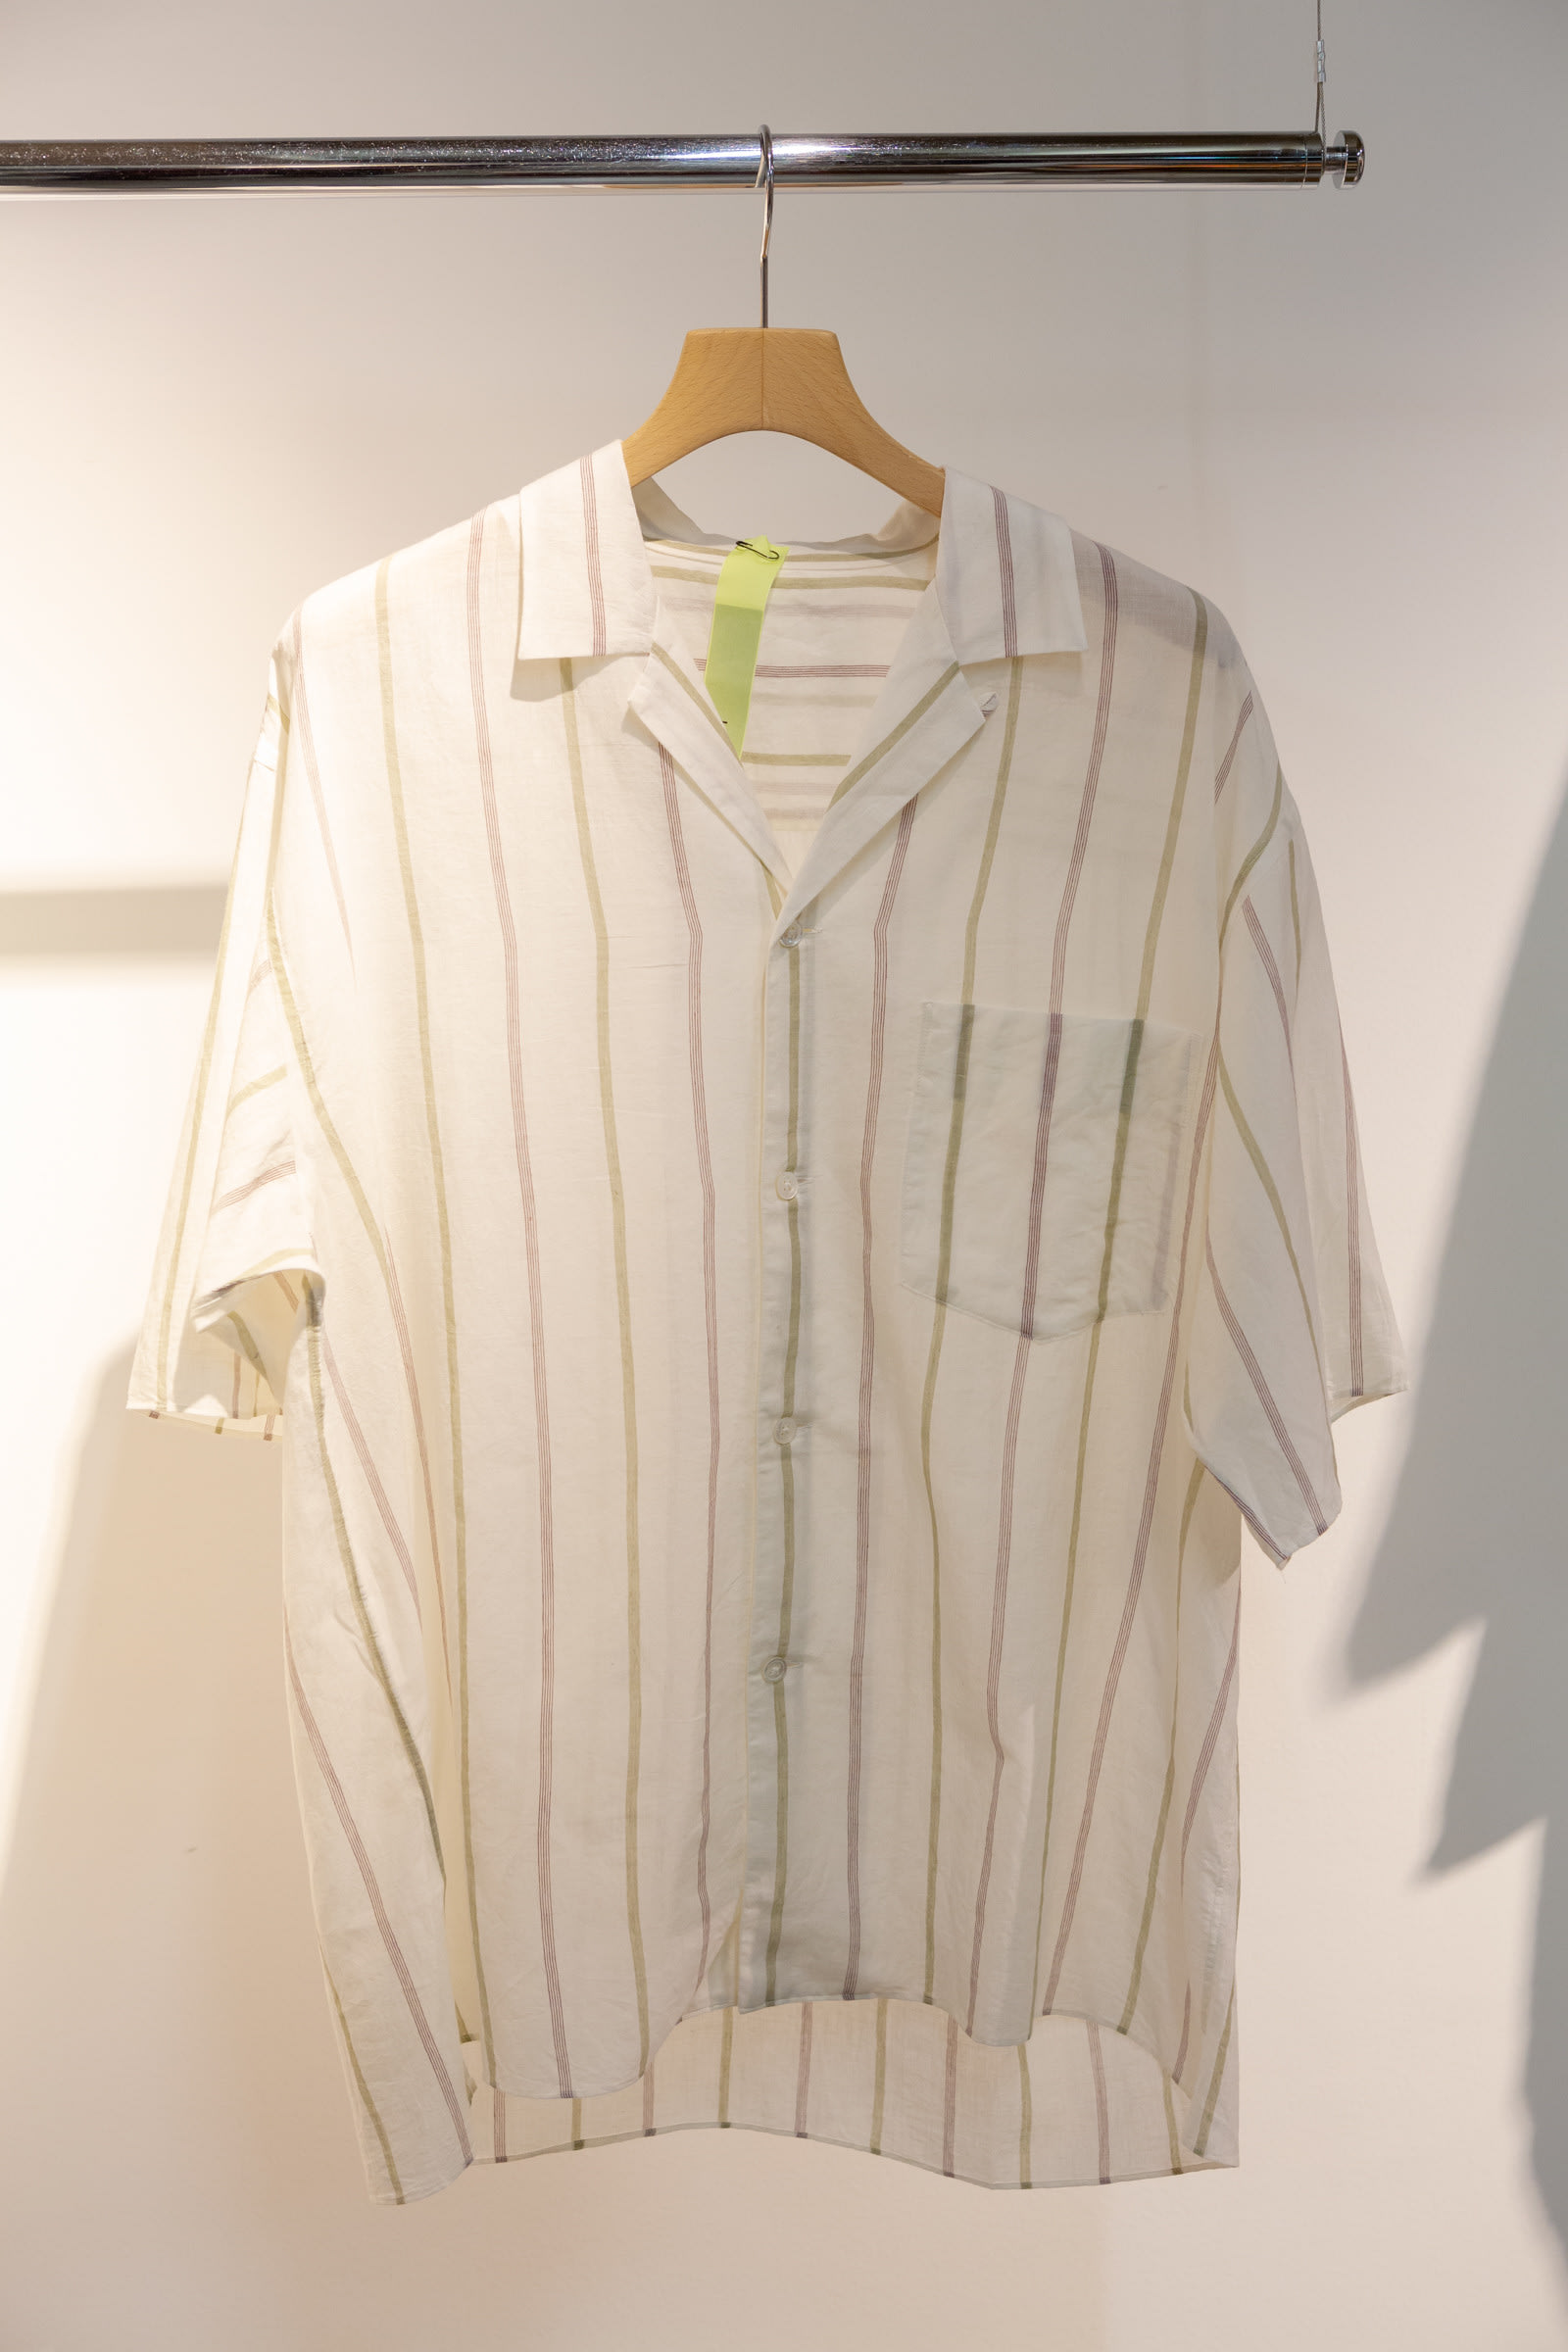 ファブリックブランド「ルーマー」が初のウェアを製作、5型のパジャマ 